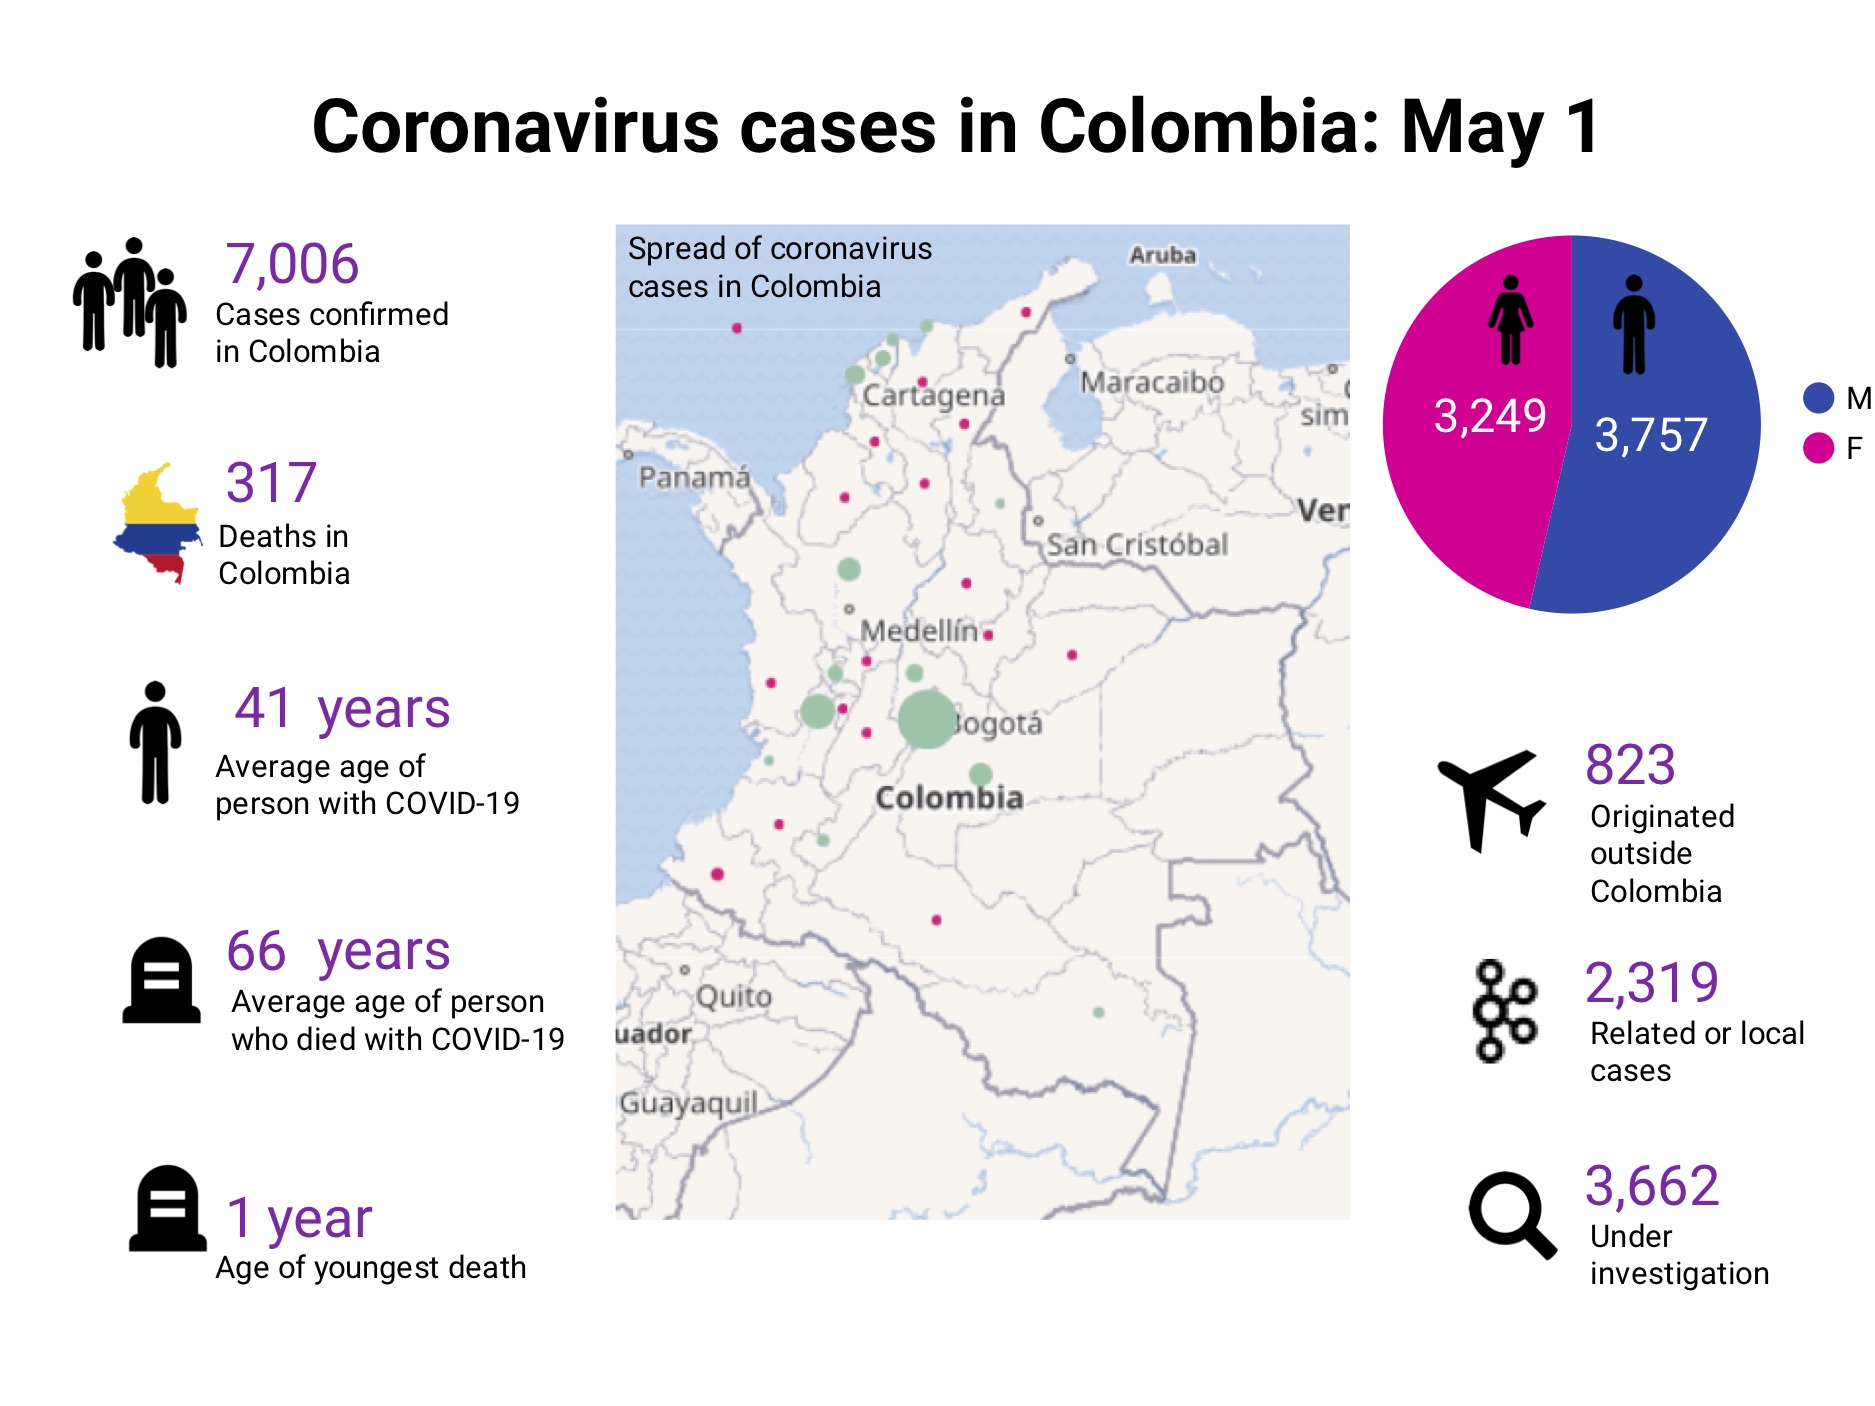 Coronavirus in Colombia: May 1 update